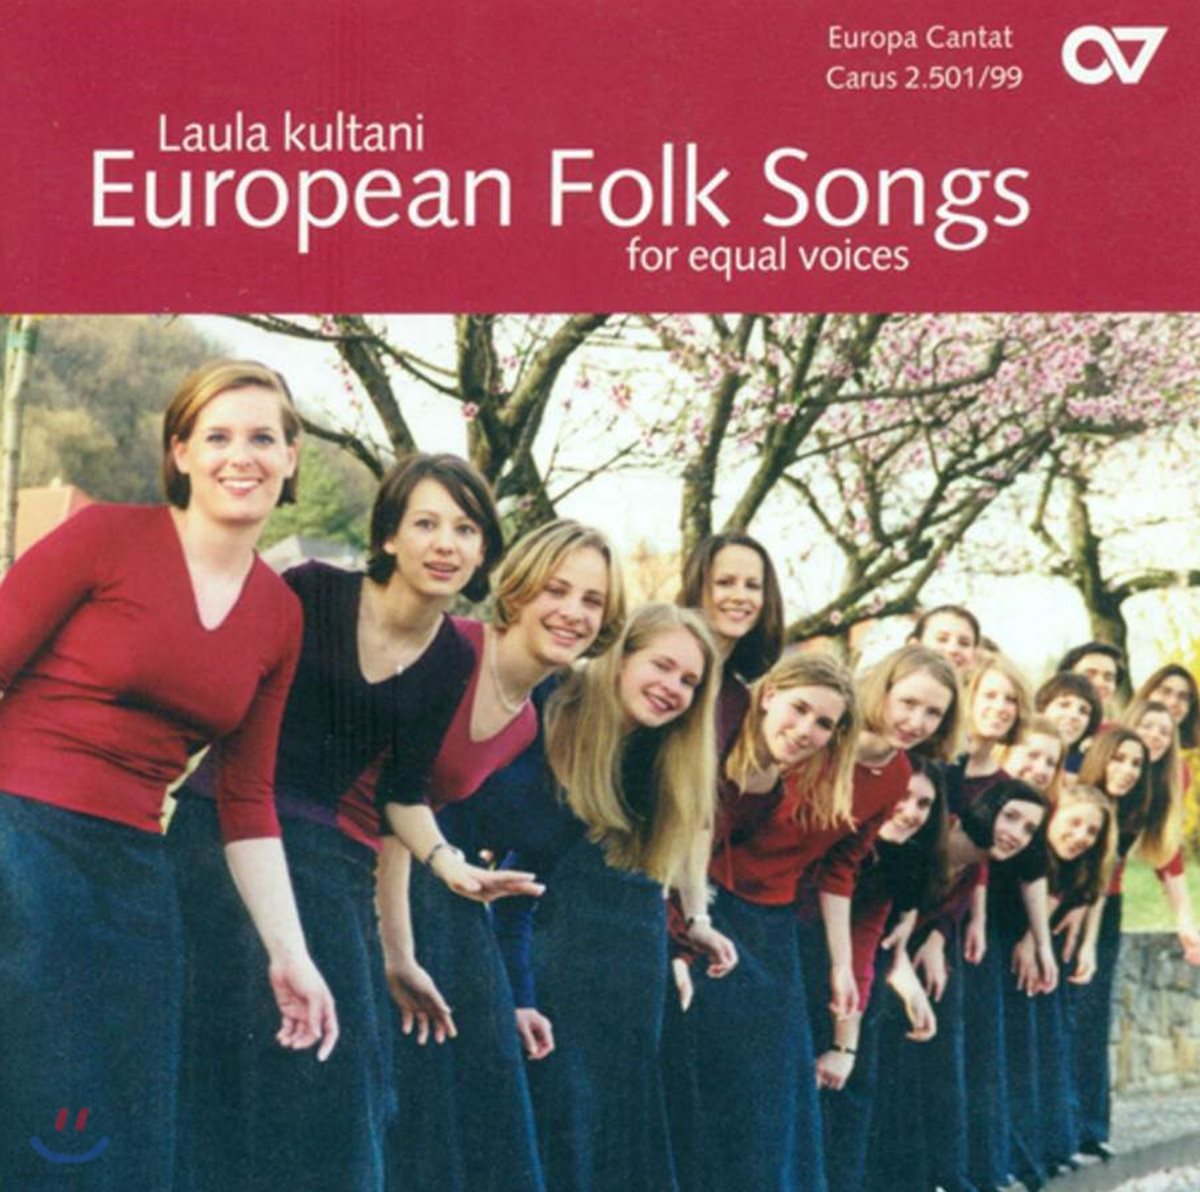 Choirs Of Europe 유럽 각국의 가장 사랑받는 민요 모음집 [남성, 여성 합창단 편]